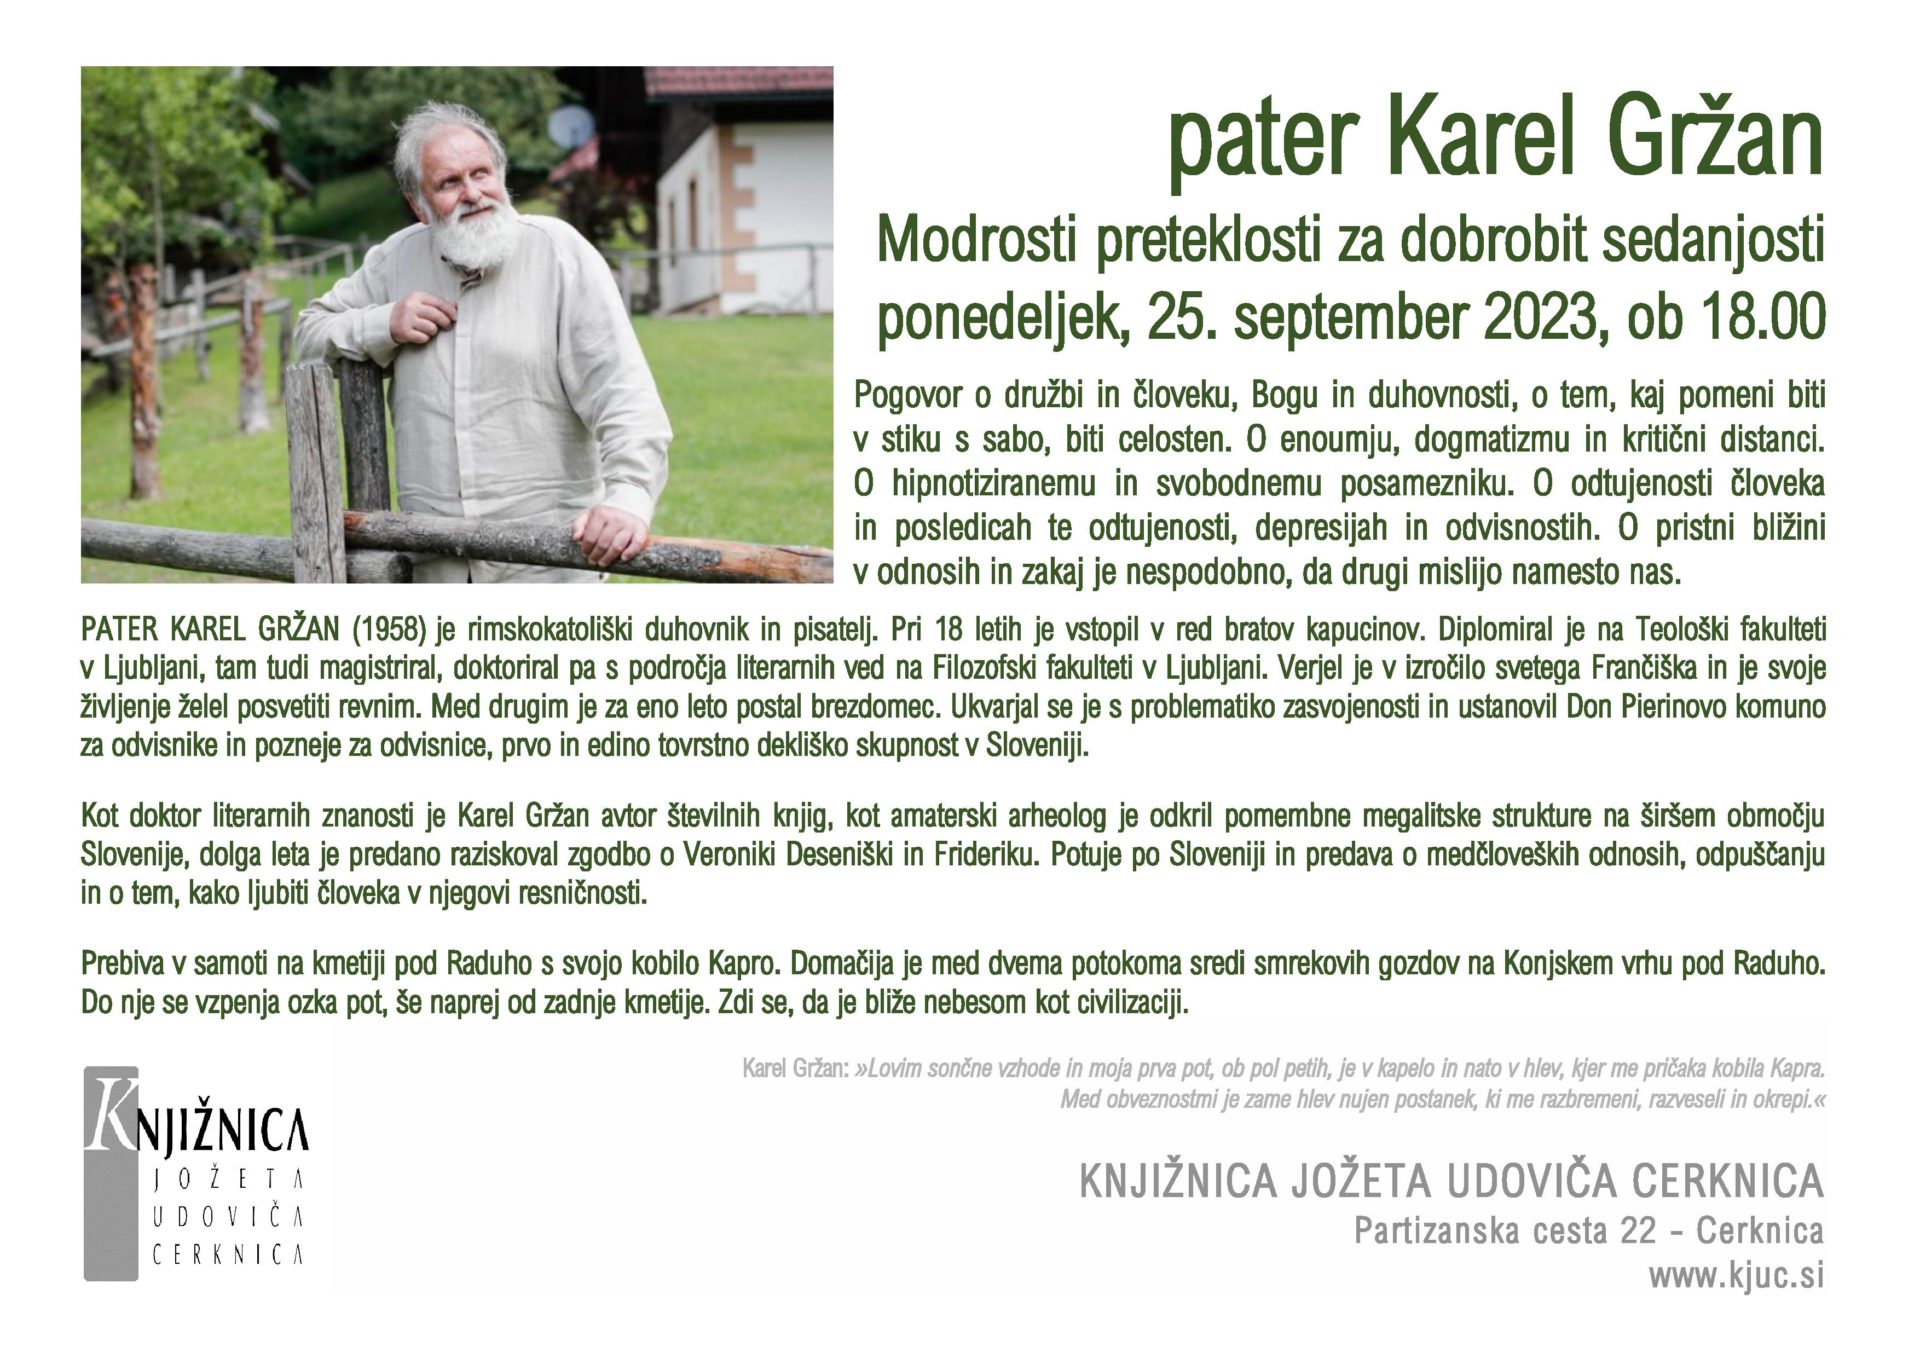 pater Karel Grzan page 001 - Pater Karel Gržan: Modrosti preteklosti za dobrobit sedanjosti